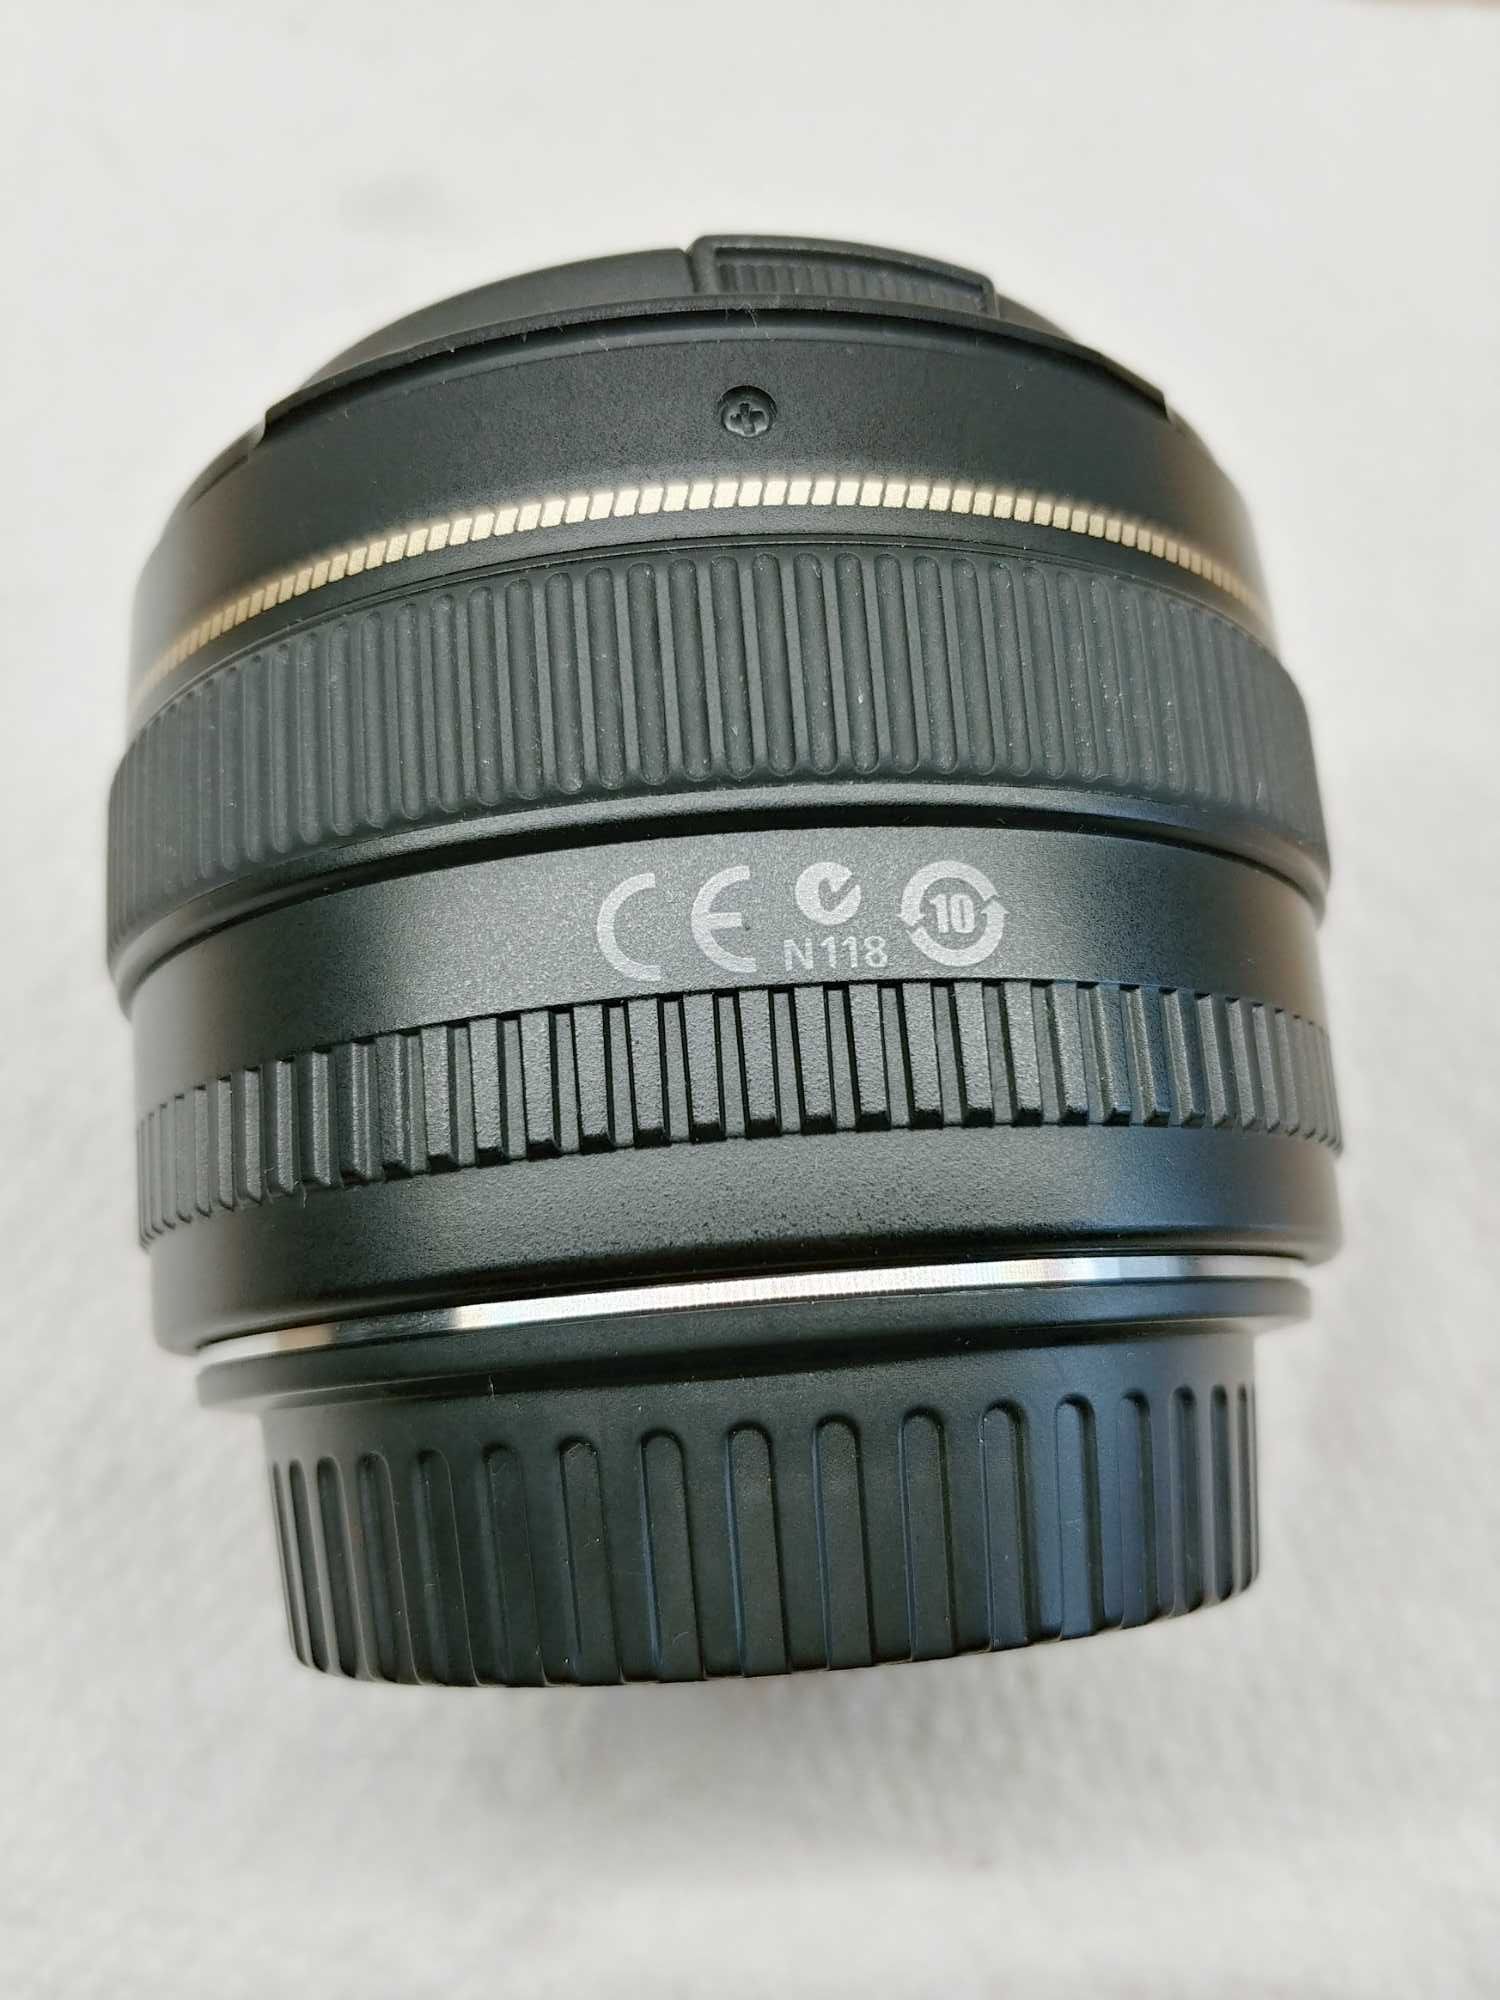 Jasny stałoogniskowy obiektyw Canon EF 50mm f 1.4 USM